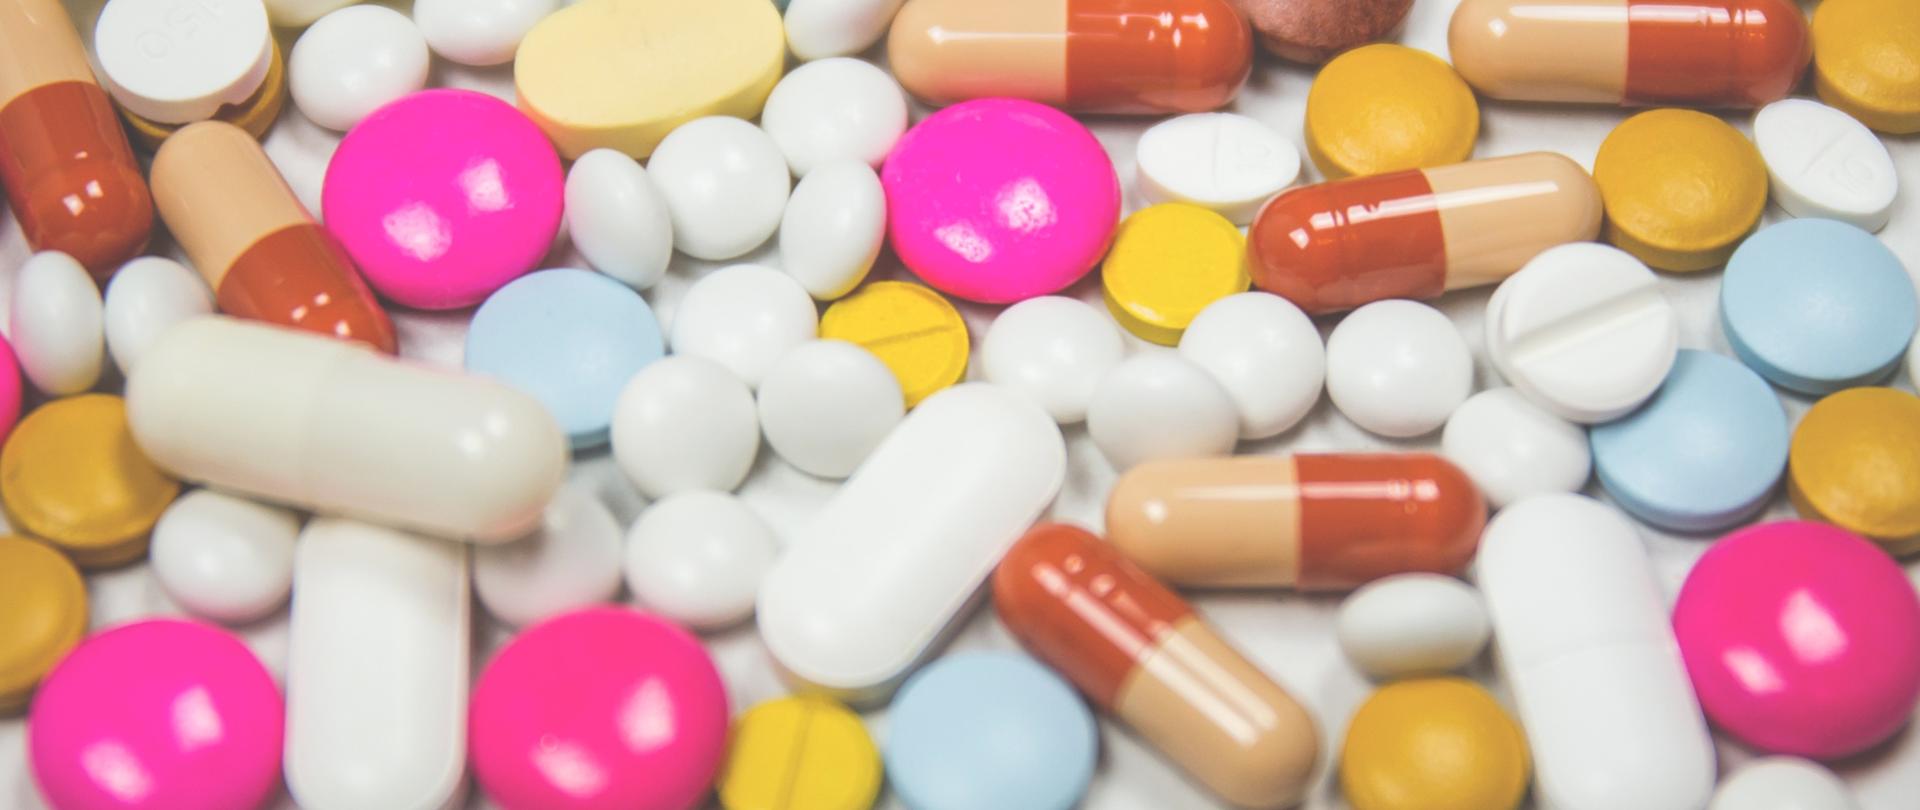 kilkadziesiąt tabletek leków, różne kolory i kształt